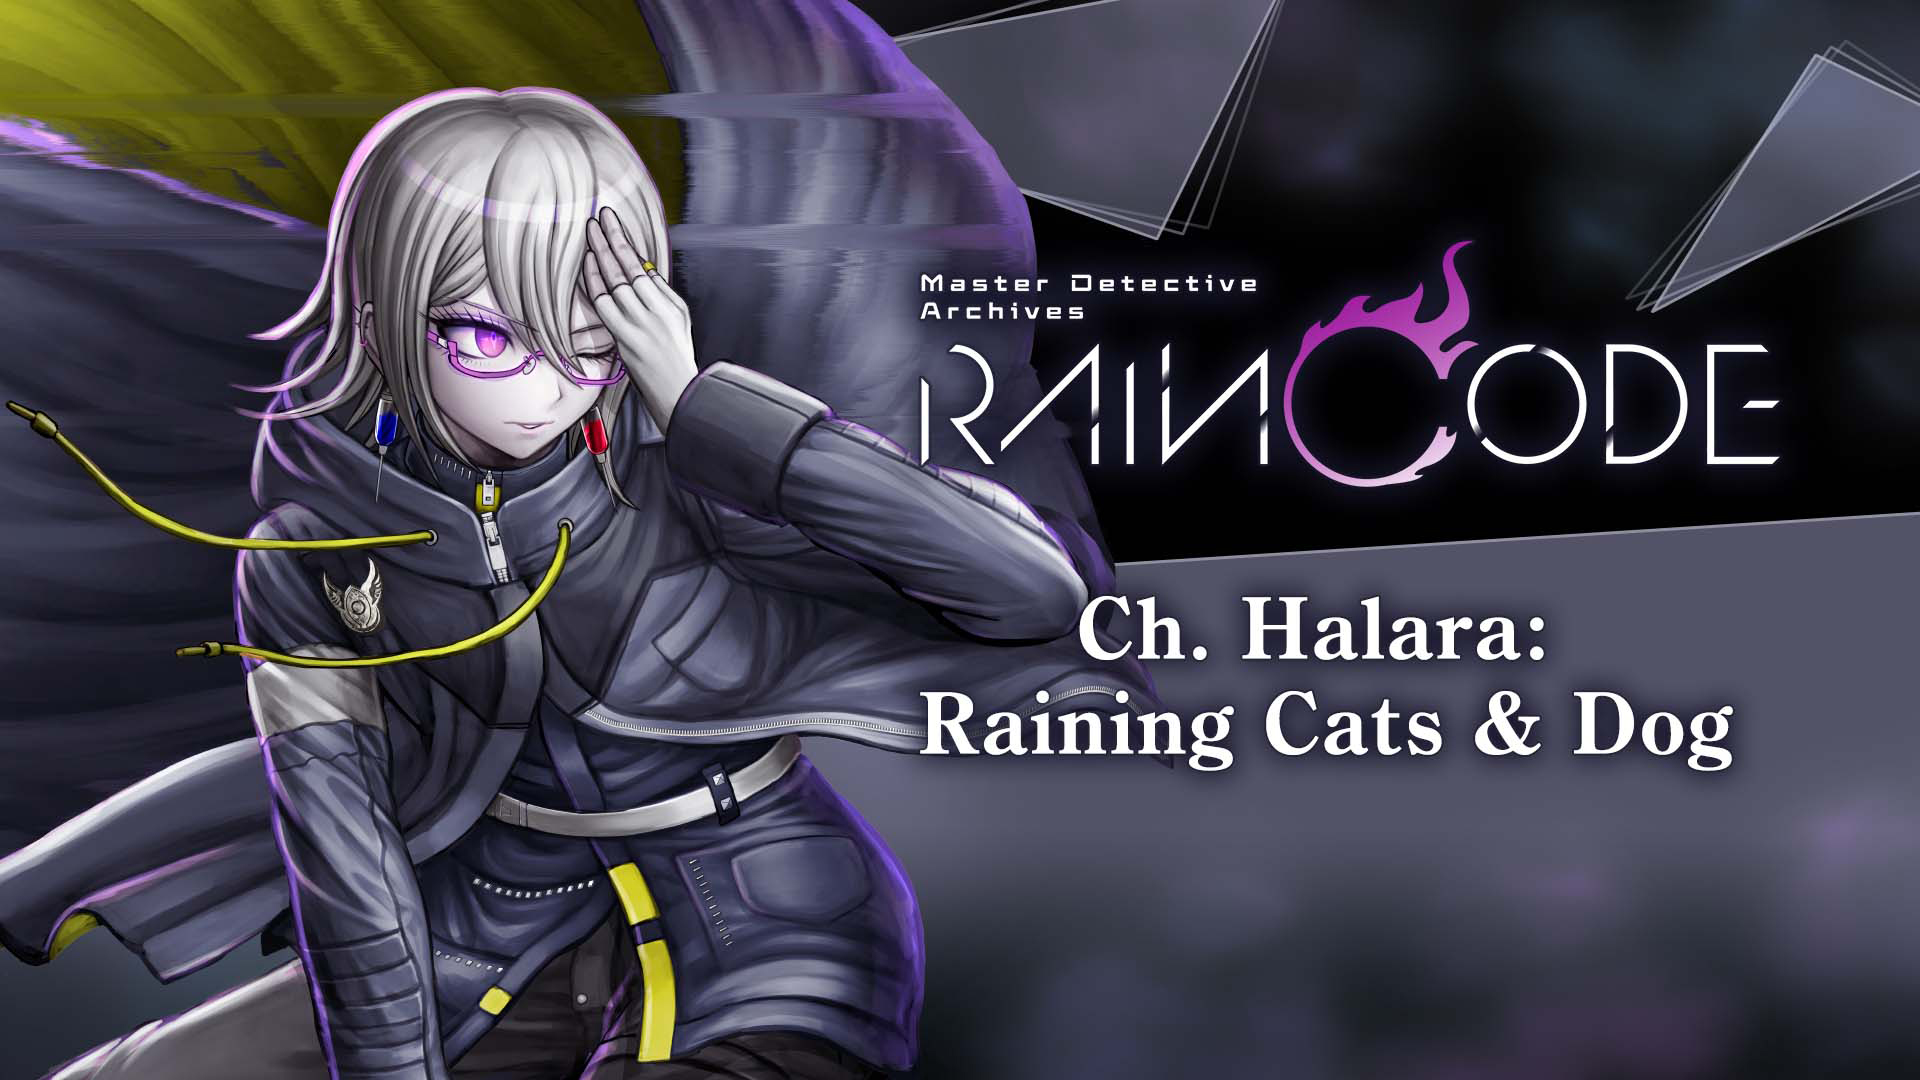 Ch. Halara: Raining Cats & Dog